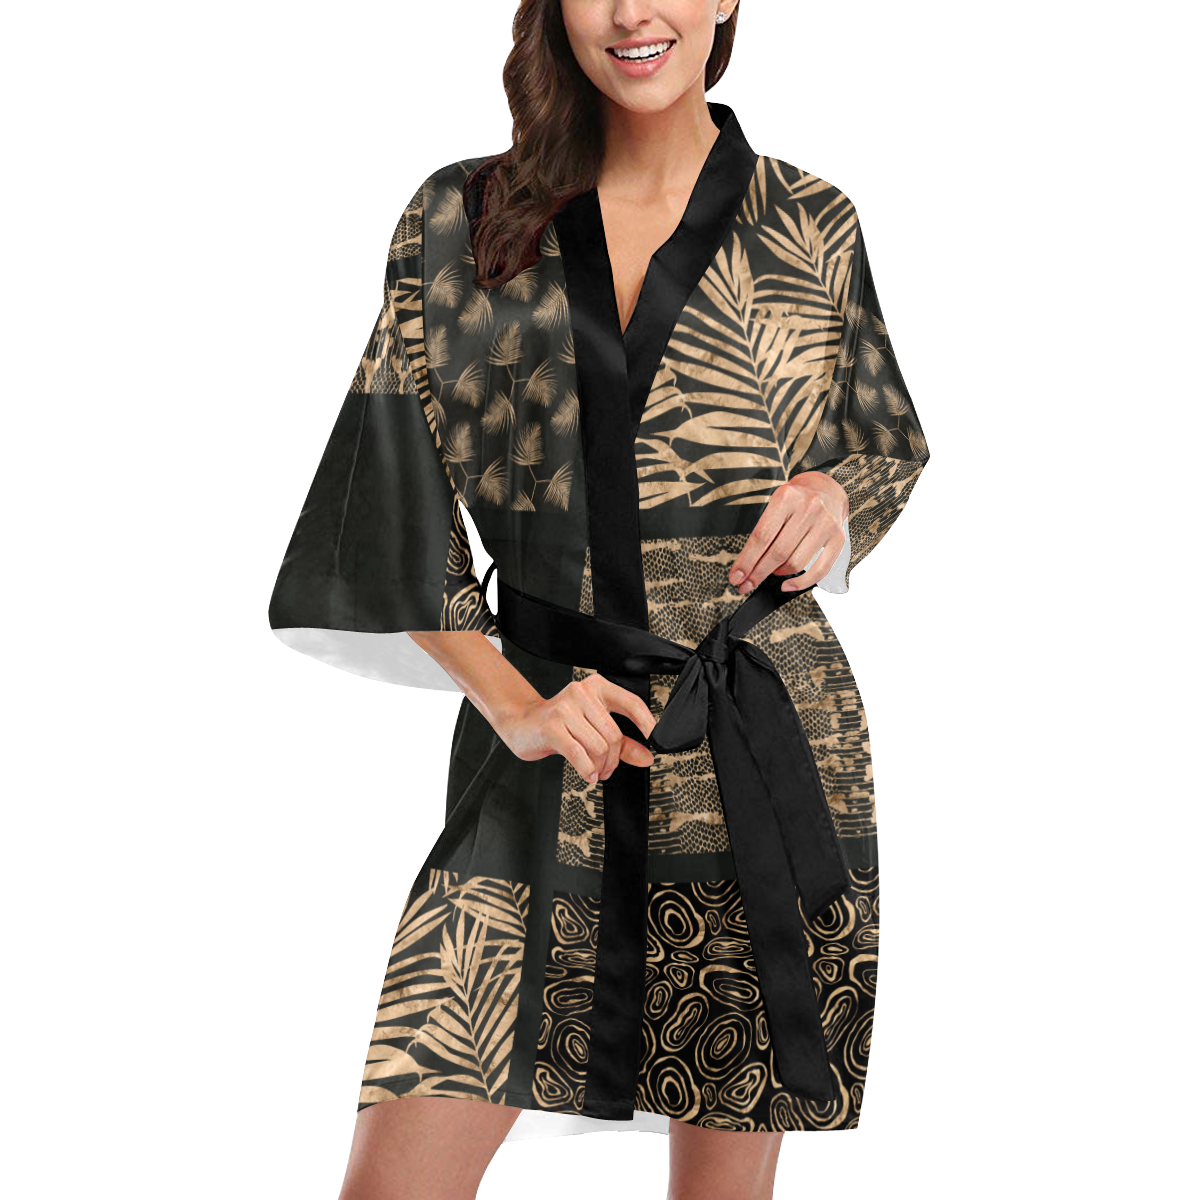 Exclusive Golden Black Python Patchwork Kimono Robe